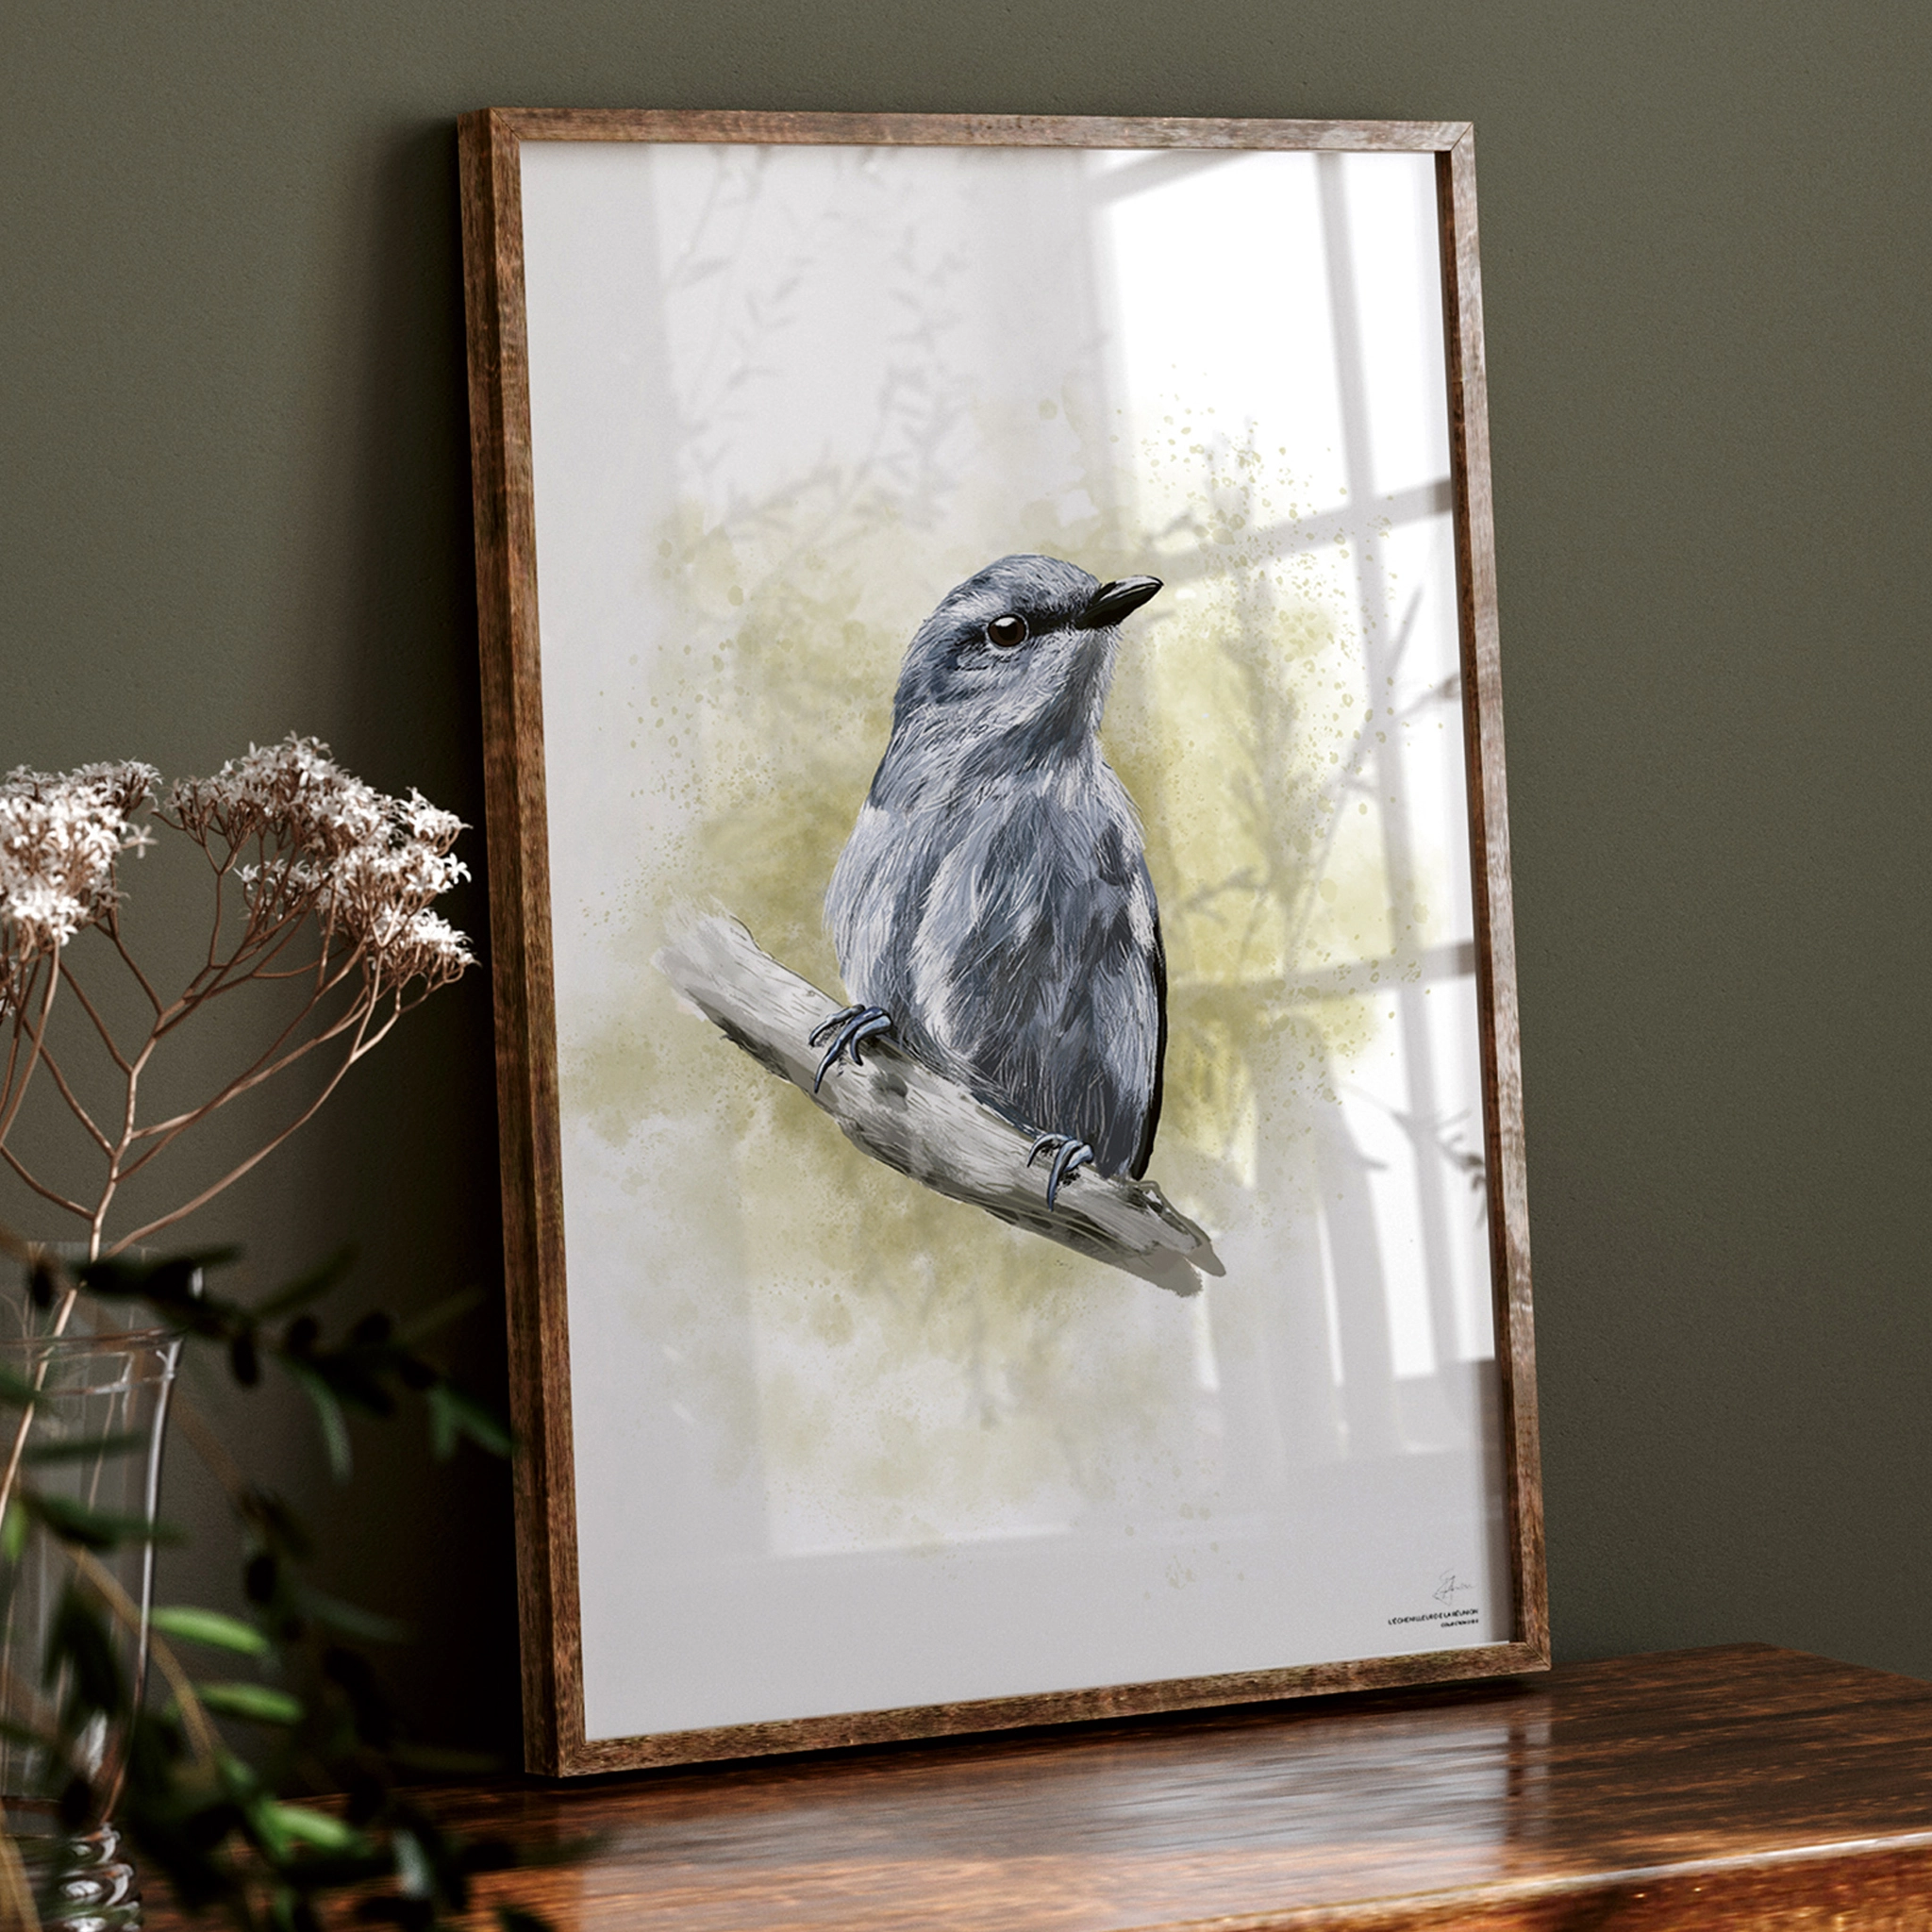 Image d'un portrait encadré d'un oiseau, posé sur un meuble ancien en bois, orné d'un bouquet de fleurs. Les bordures du cadre sont en bois foncé. À l'intérieur du cadre se trouve une illustration colorée d'un oiseau aux nuances bleu/violet, accroché à une branche. L'arrière-plan est un fond coloré vert pomme, façon tâches d'aquarelle.